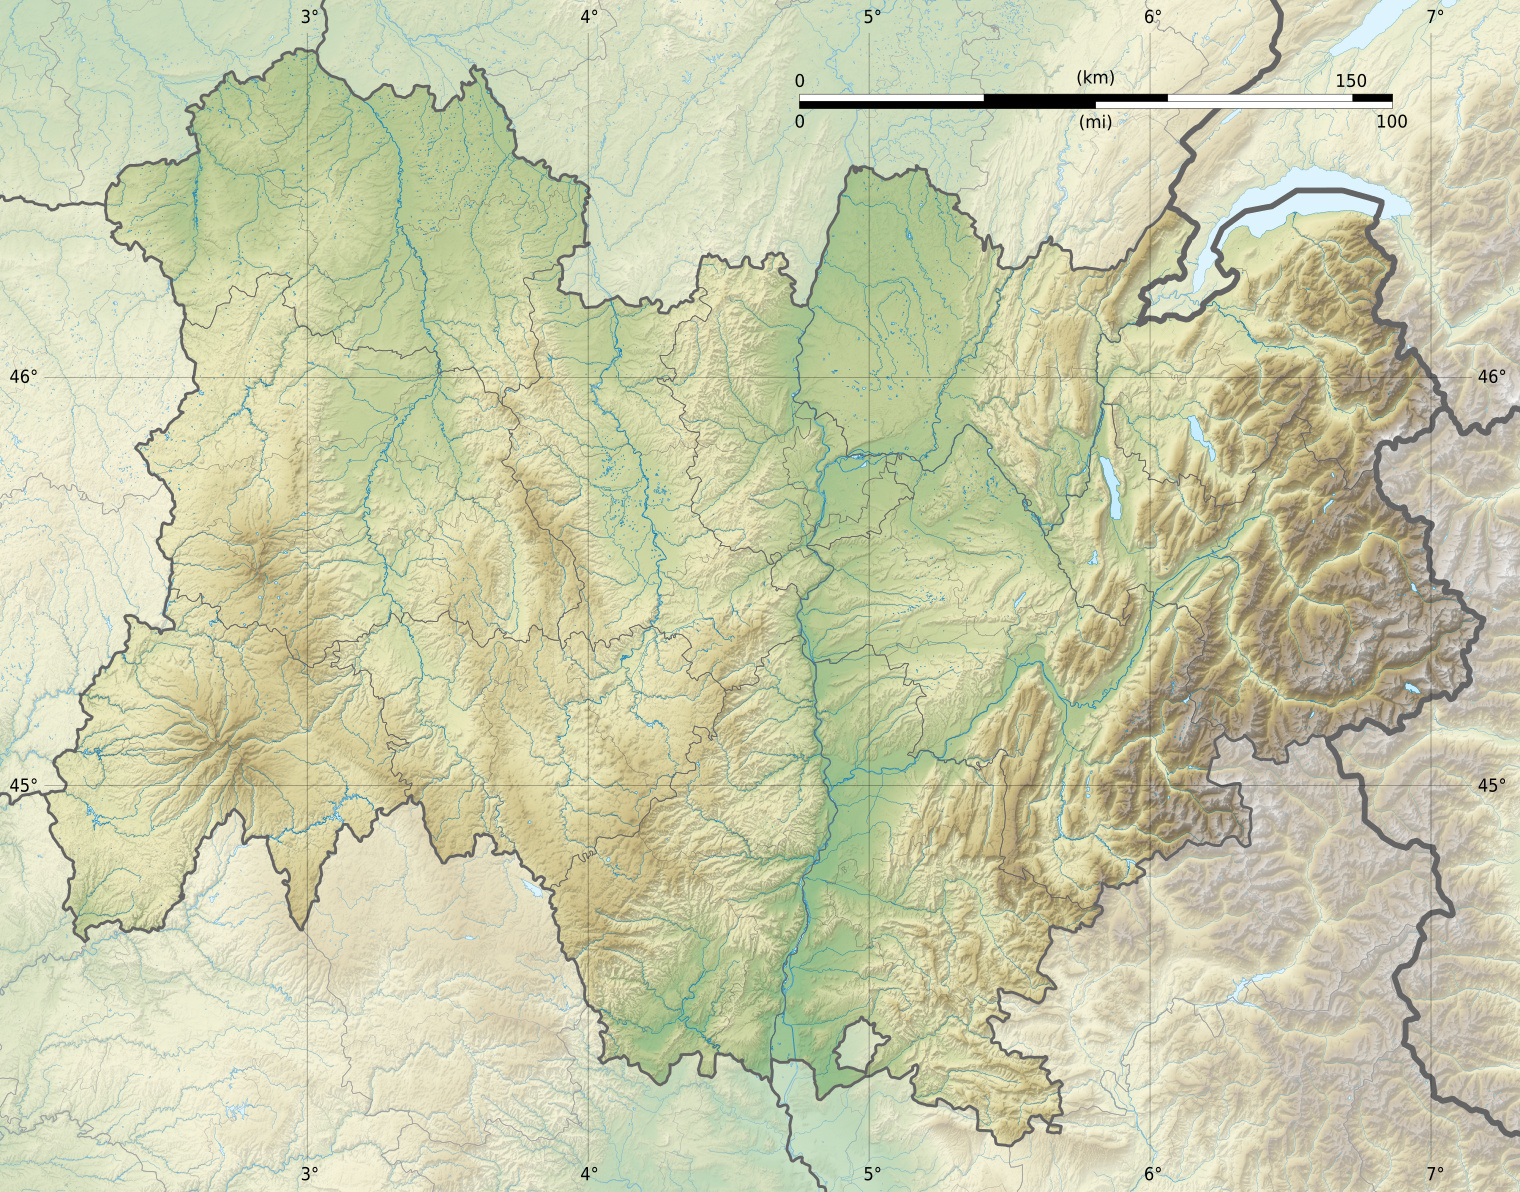 Fil:Auvergne-Rhône-Alpes region location map.jpg - Wikipedia, frie encyklopædi